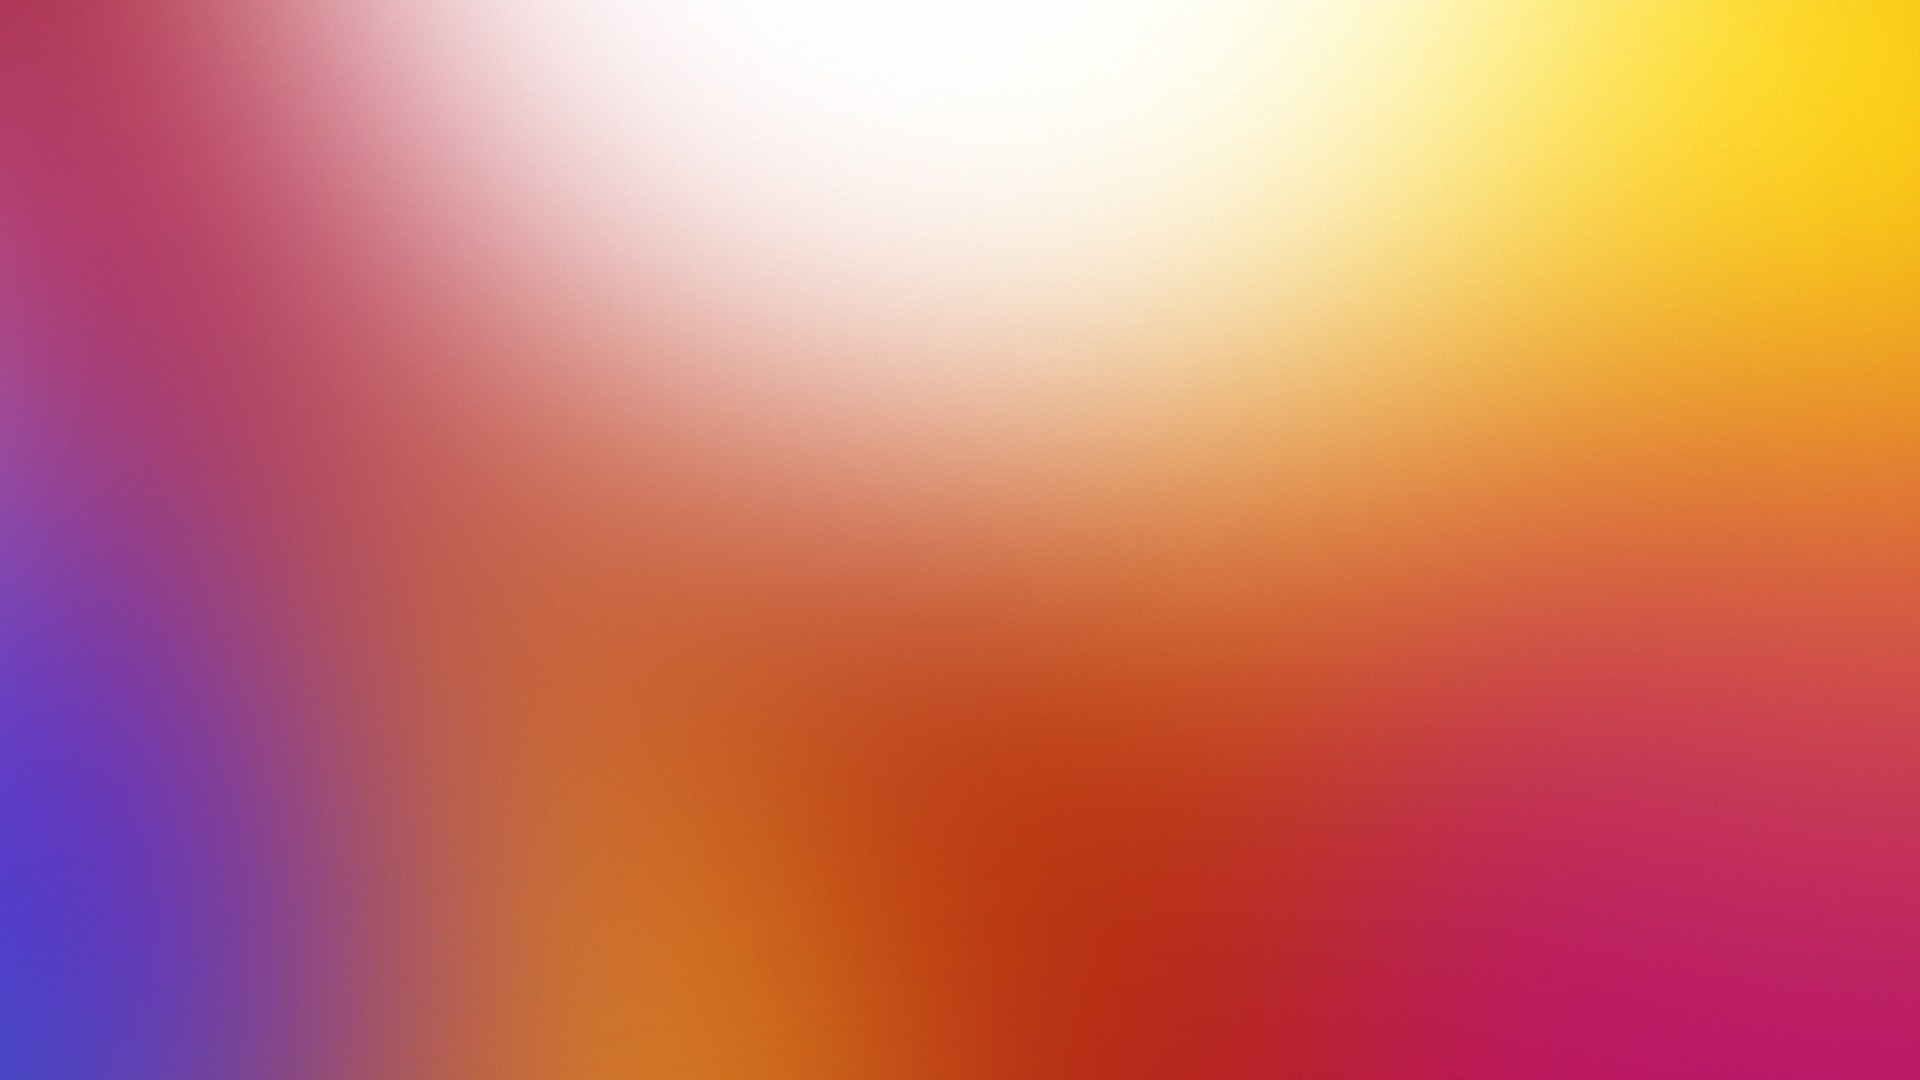 lenovo k5 note wallpaper hd,arancia,giallo,rosa,viola,rosso